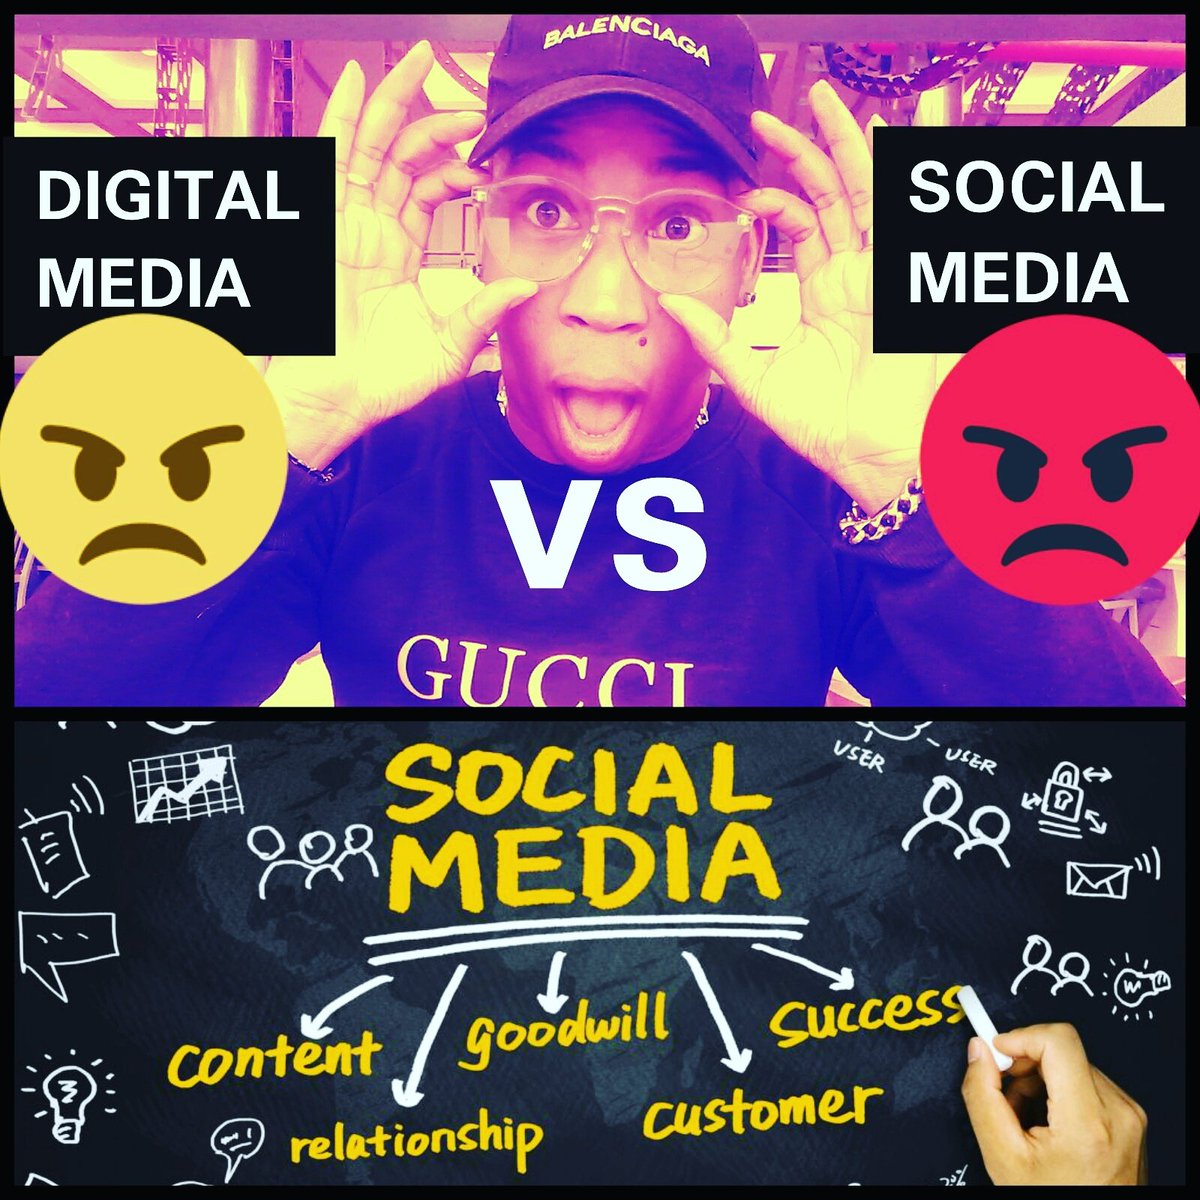 THE IMPACT SOCIAL MEDIA HAS ON DIGITAL MEDIA MARKETING - MalkamDior.com

#socialmediamarketing #SMM #digitalartist #digitalmarketing #digitalmedia #seo #marketing #digitalmedia #mediatips #SEOTalk #networkmarketing #seochat